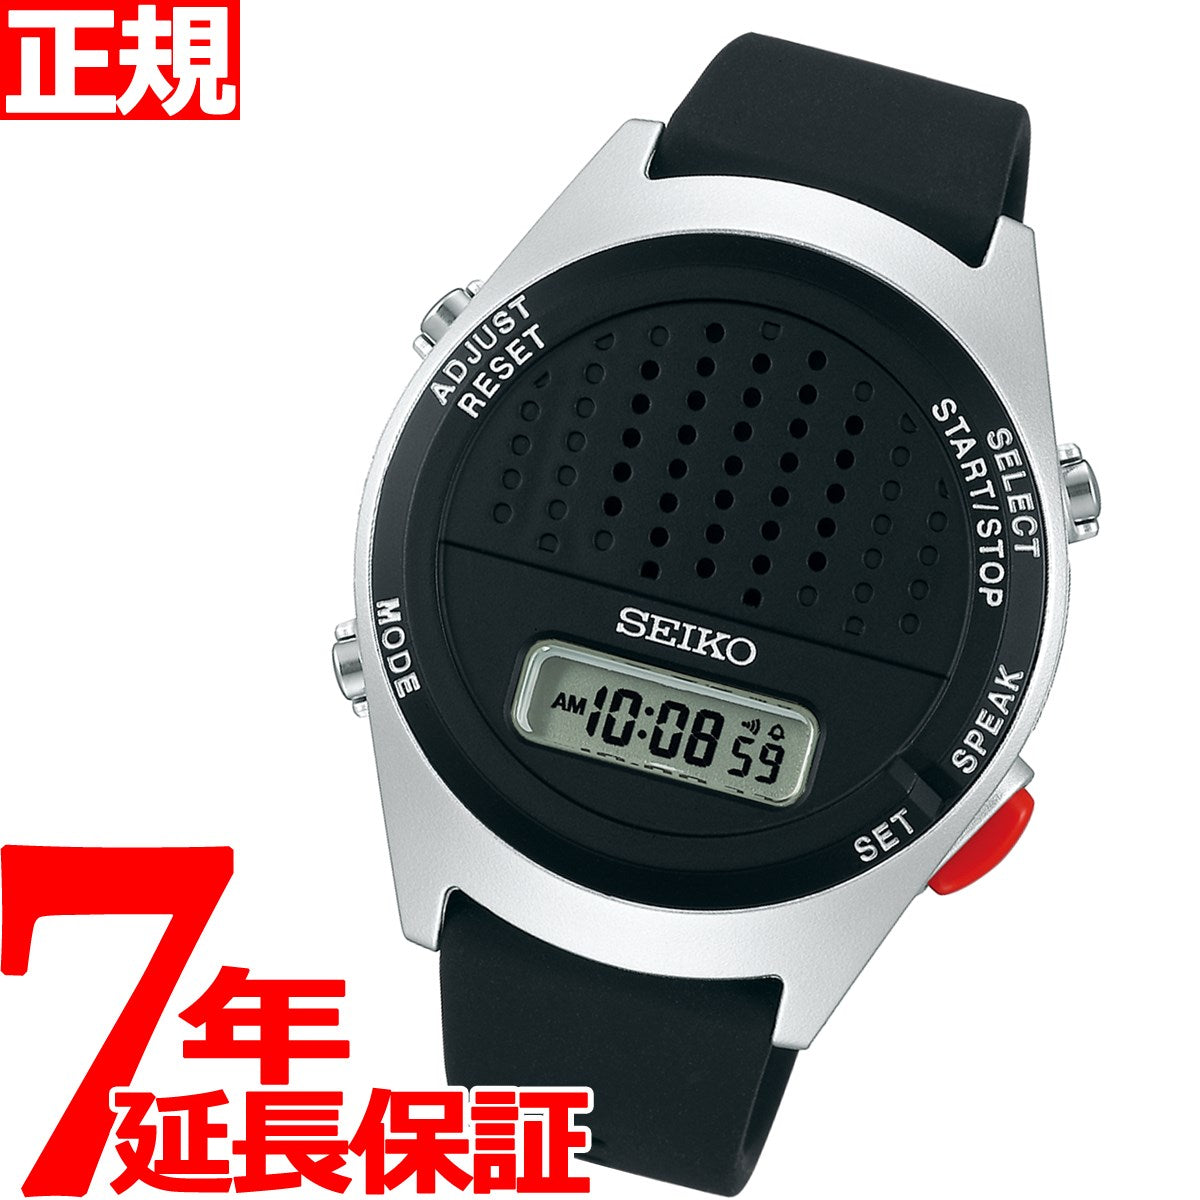 SEIKO 音声デジタルウォッチ(保証書付き) - 腕時計(デジタル)